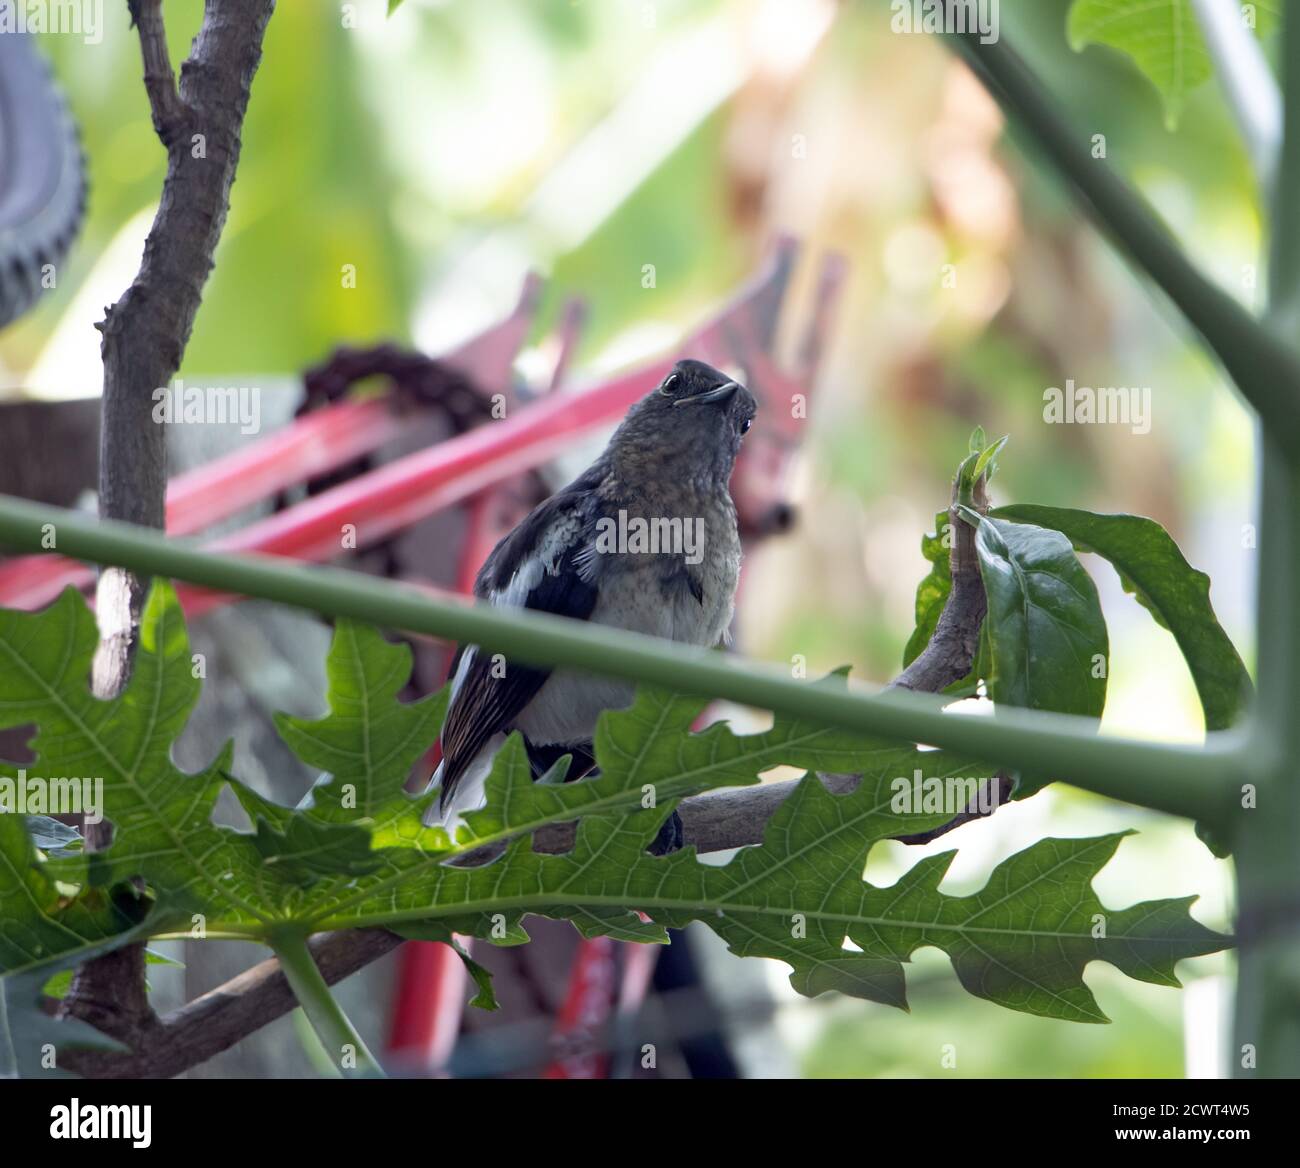 Thai bird at garden. Oriental Magpie Robin - Copsychus saularis standing on branch, Thailand. Stock Photo